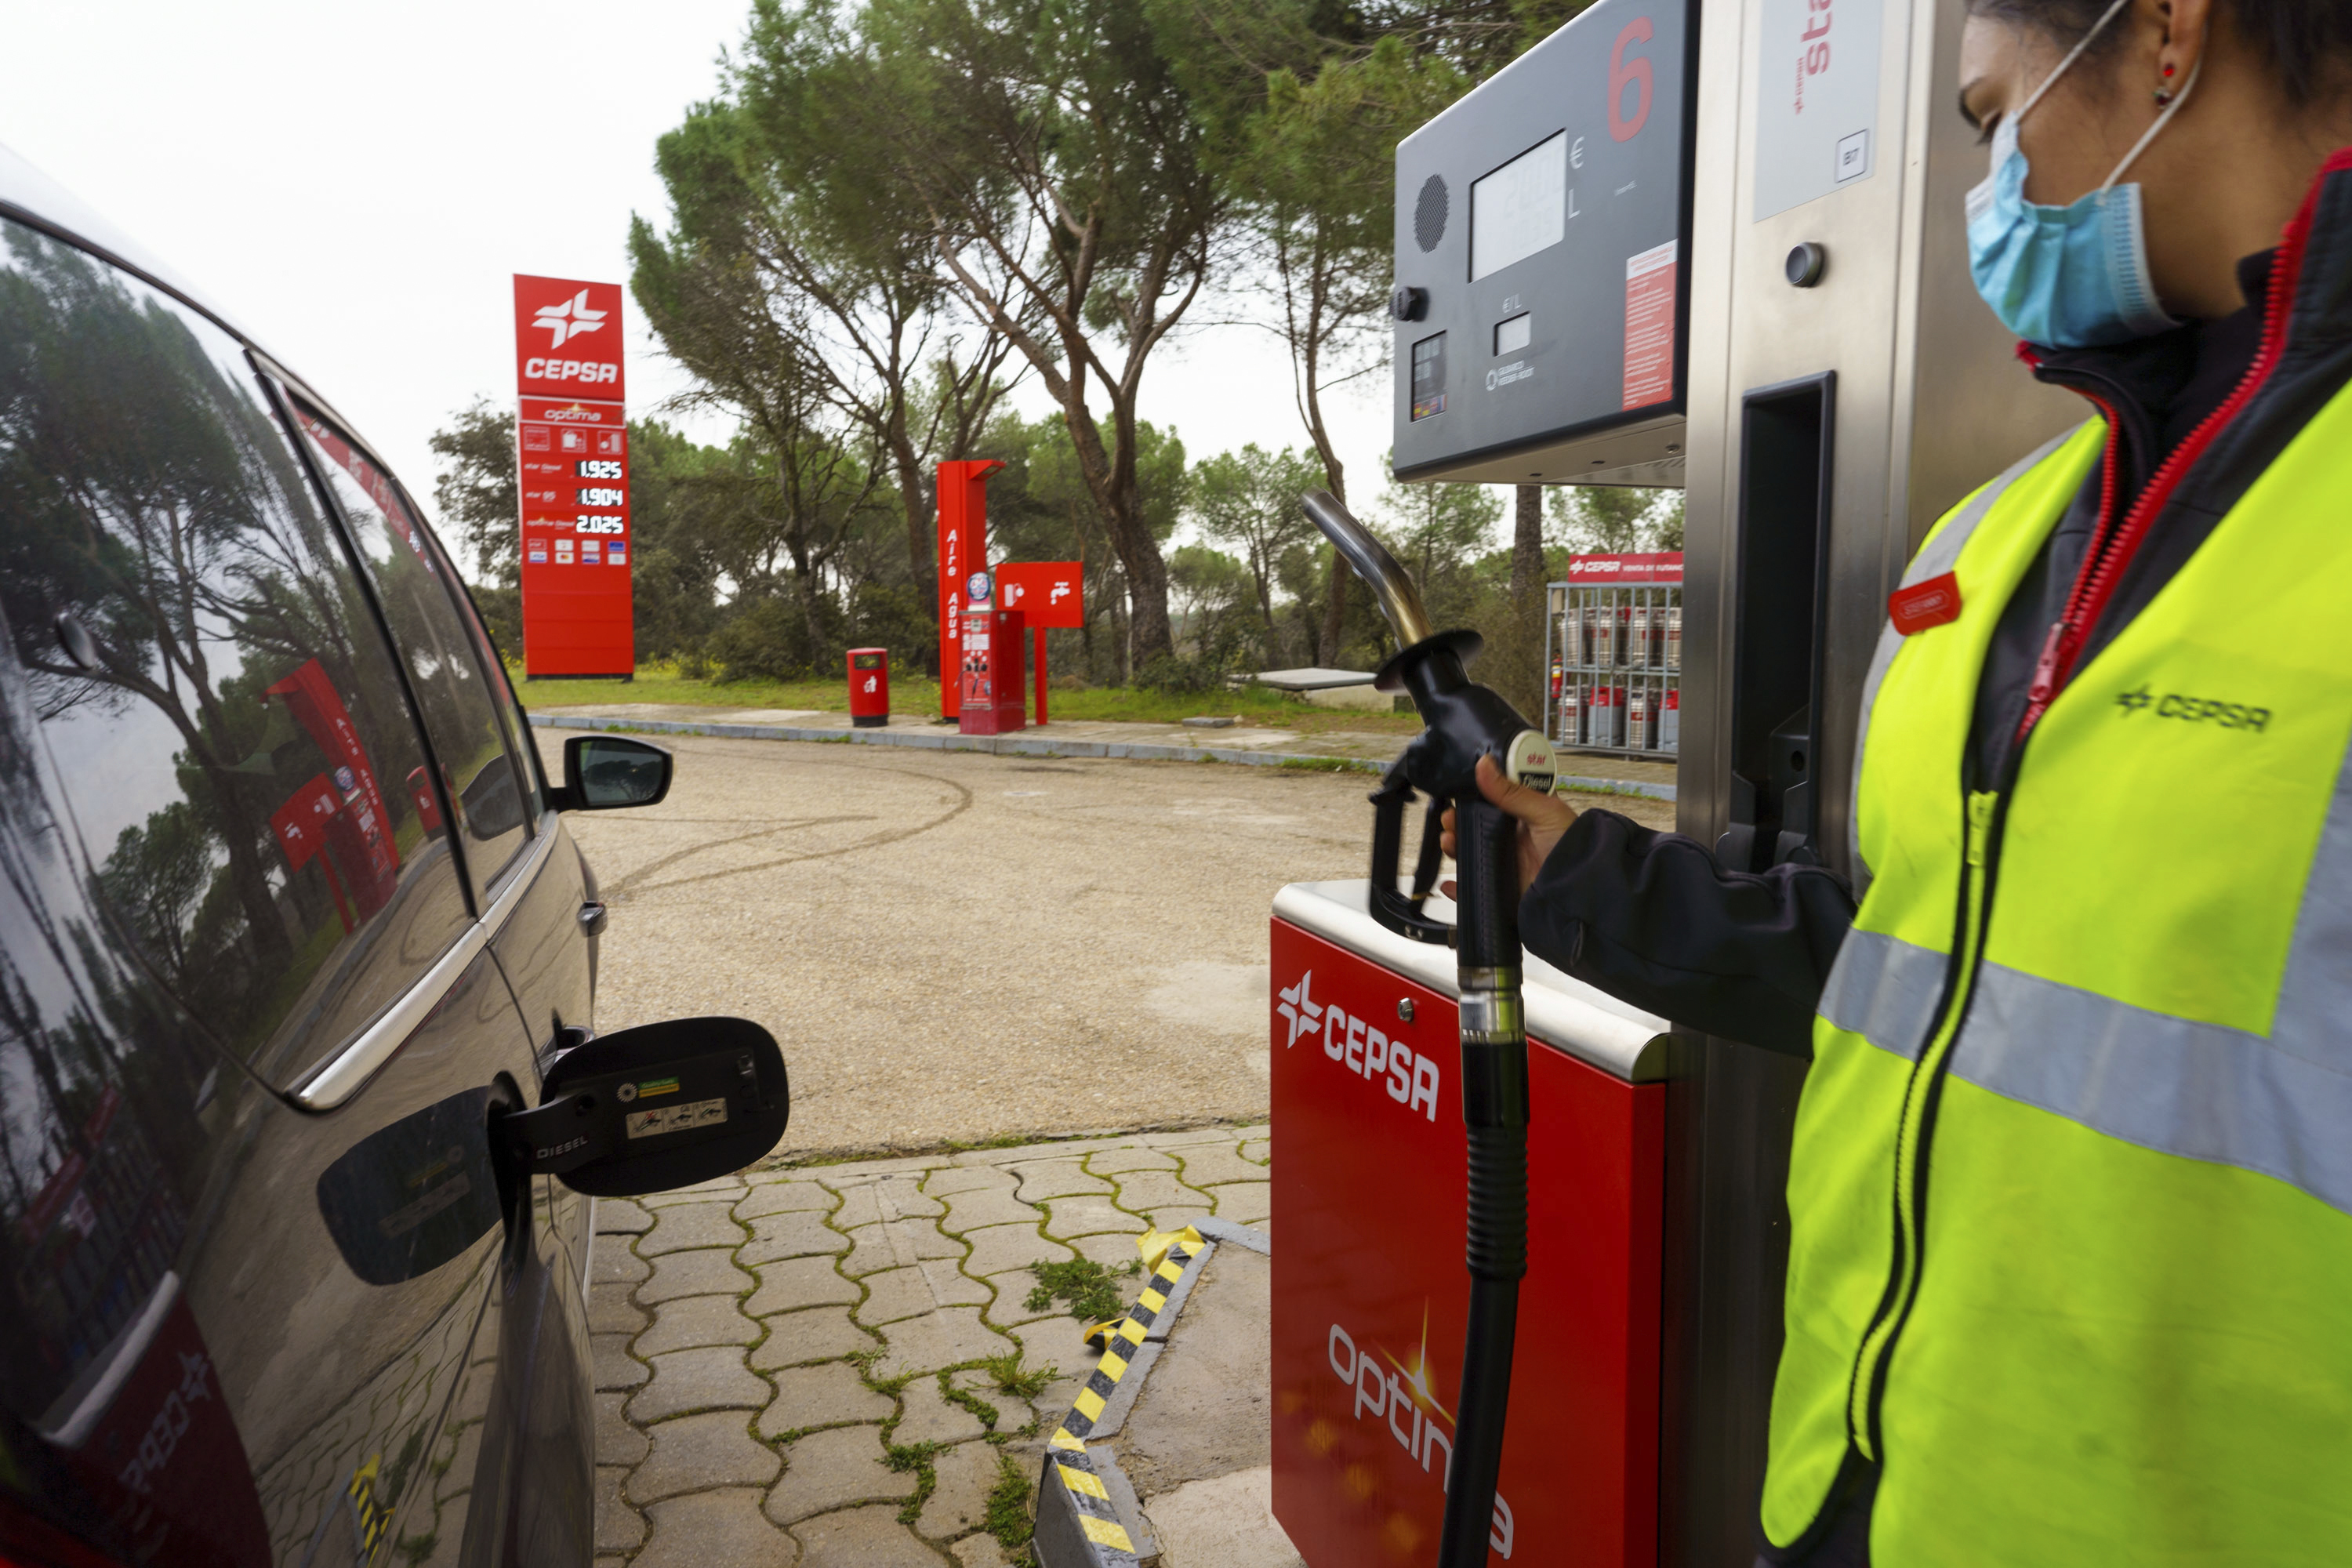 Cepsa ofrecerá un ahorro de 30 céntimos por litro en carburantes hasta finales de año